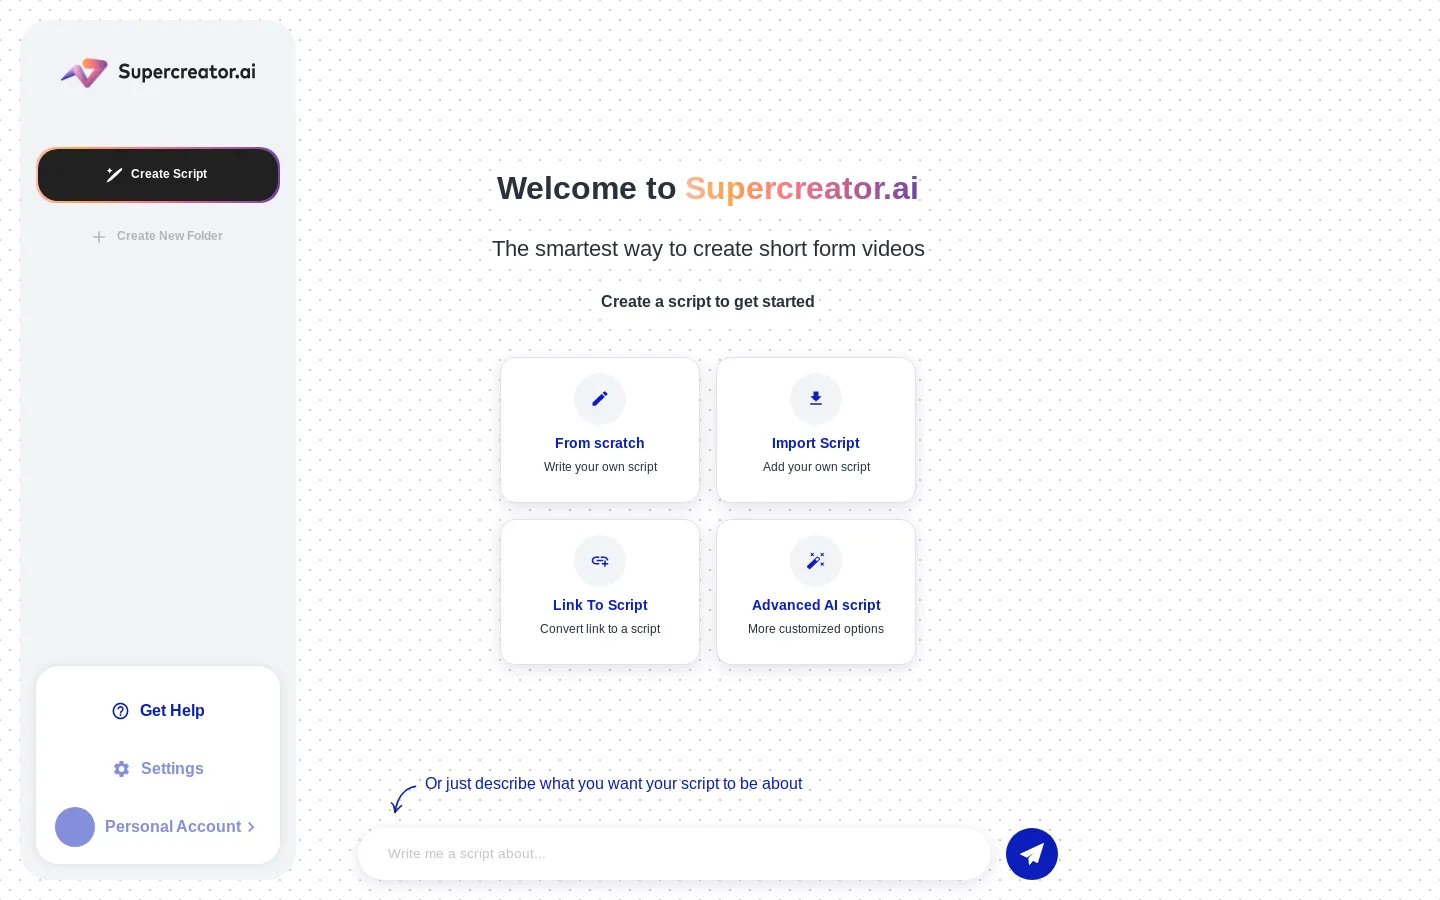 Supercreator.ai - Turn yourself into a digital supercreator